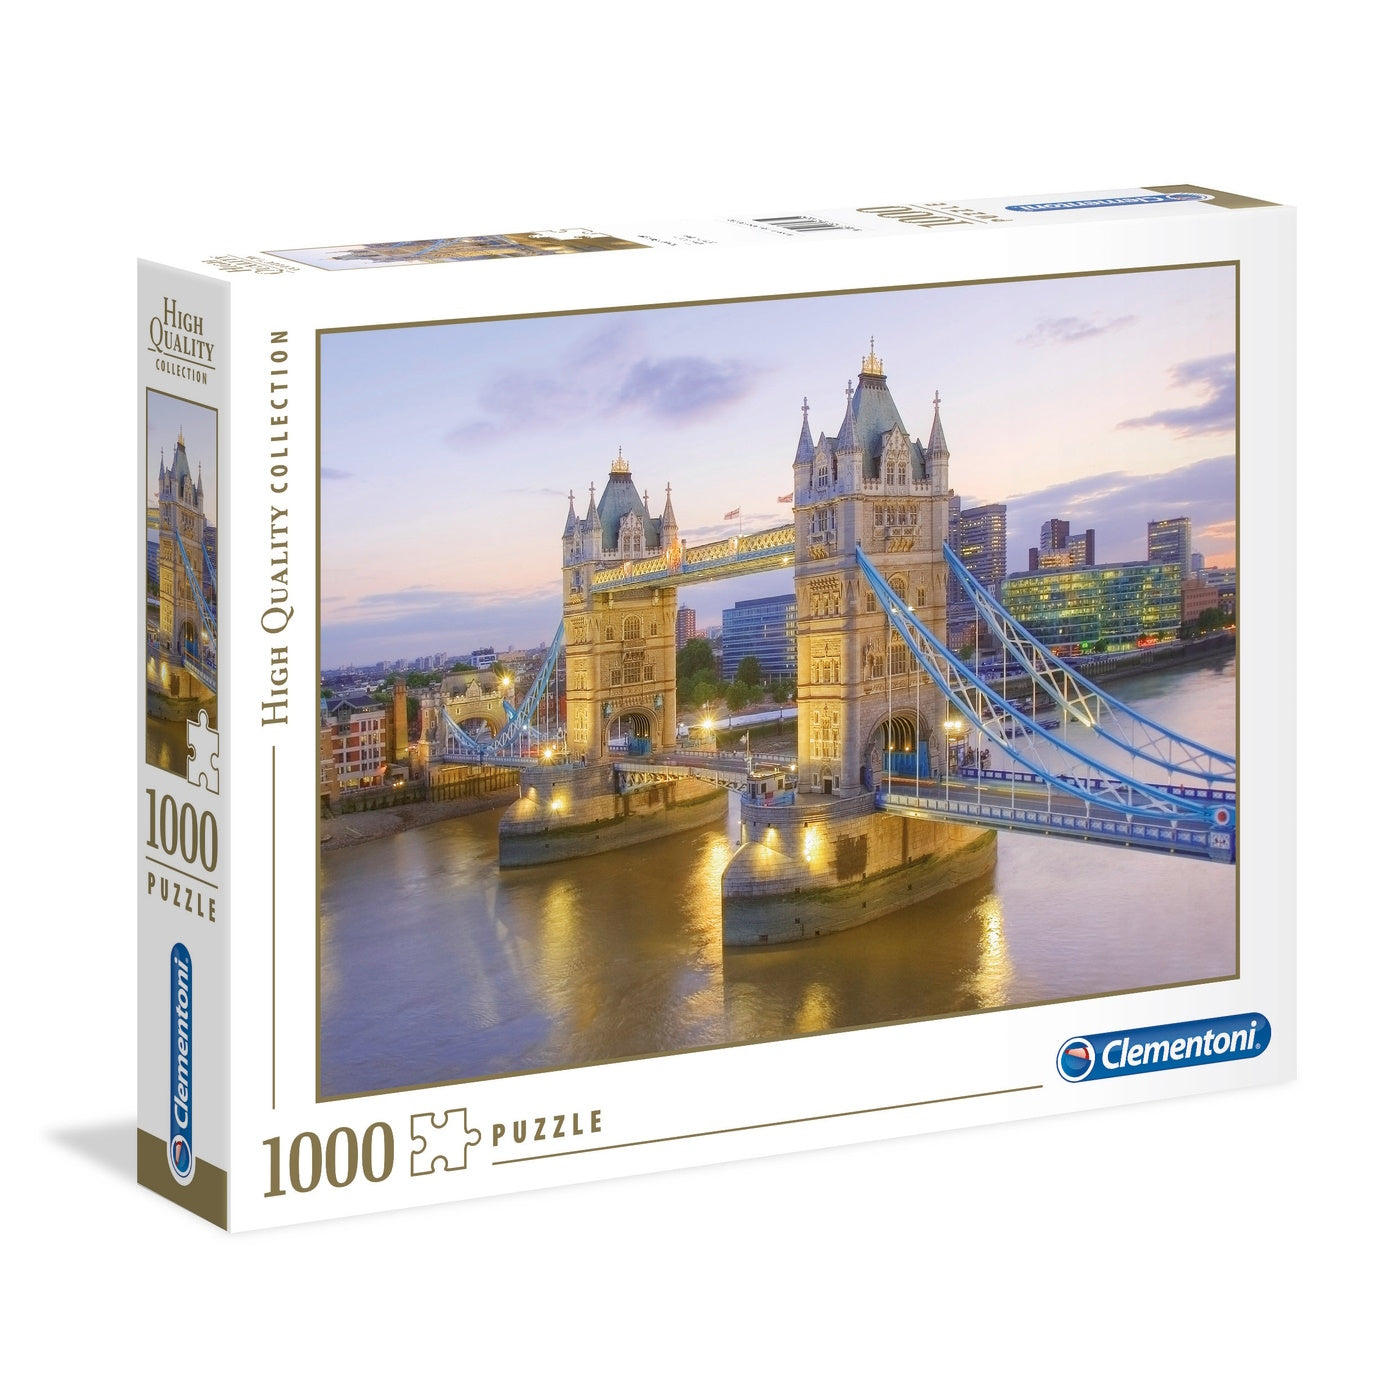 Clementoni 1000 Piece Jigsaw Puzzle - Tower Bridge